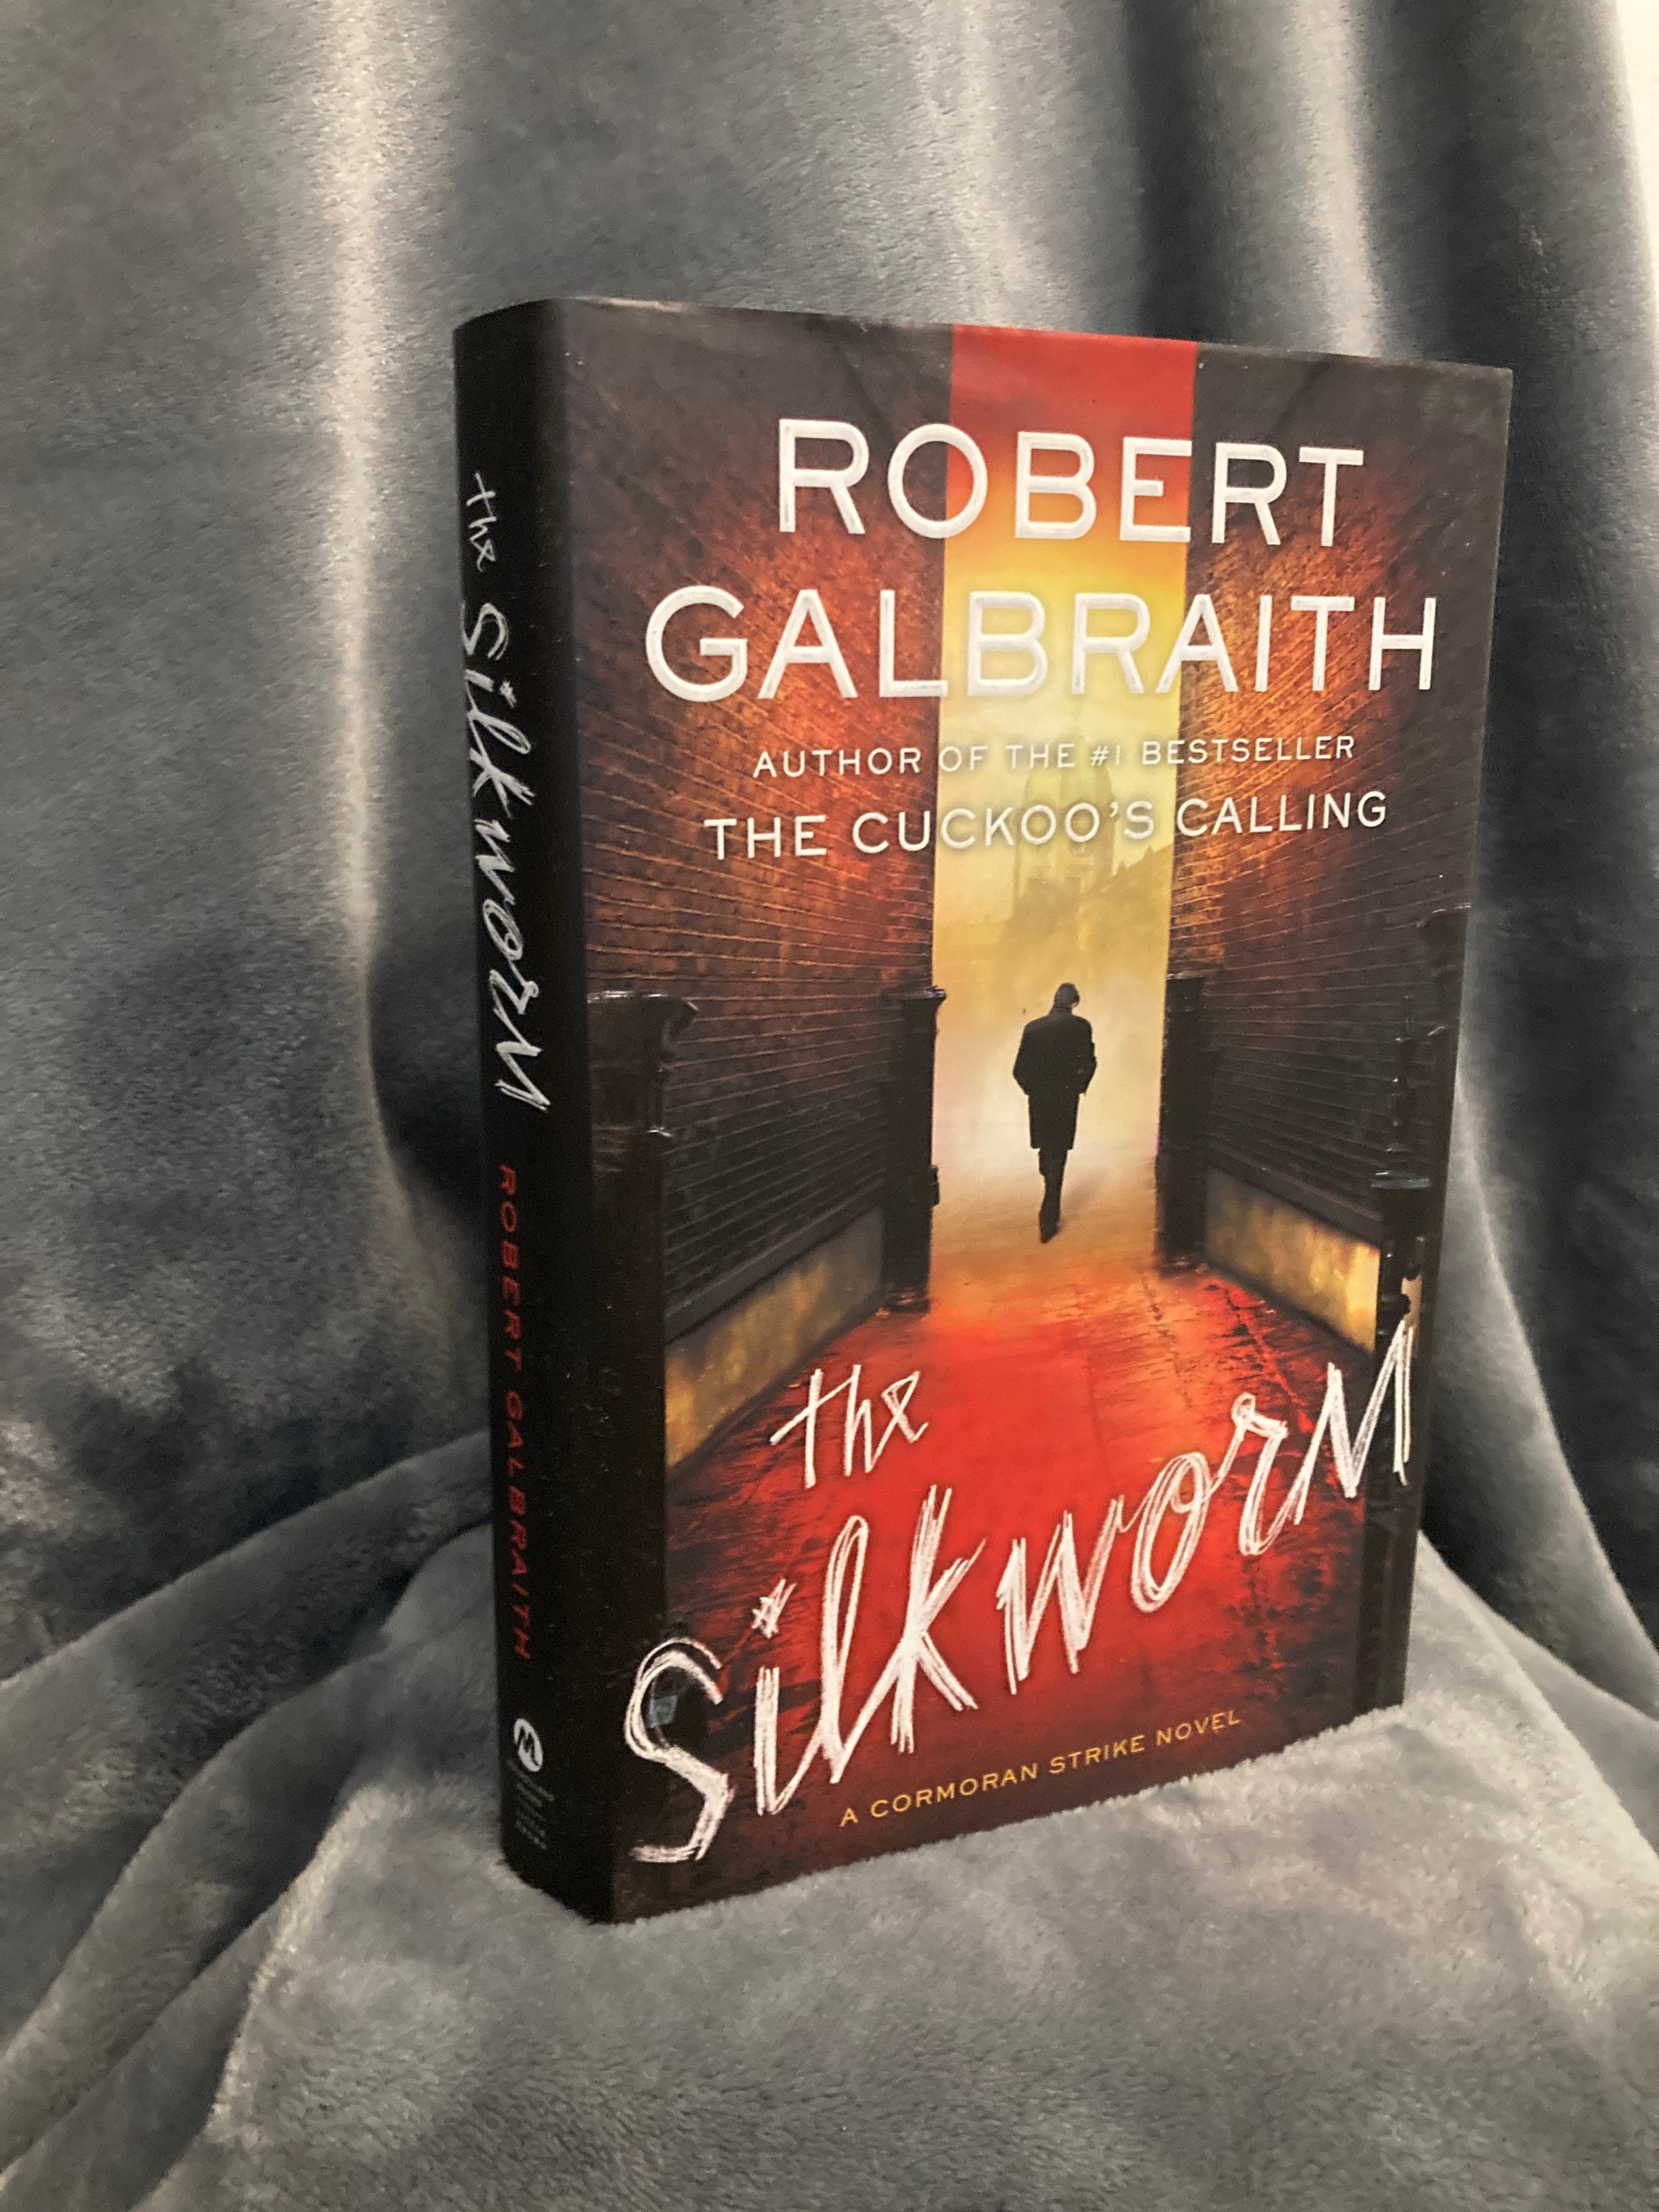 The Silkworm by Robert Galbraith Hard Cover 